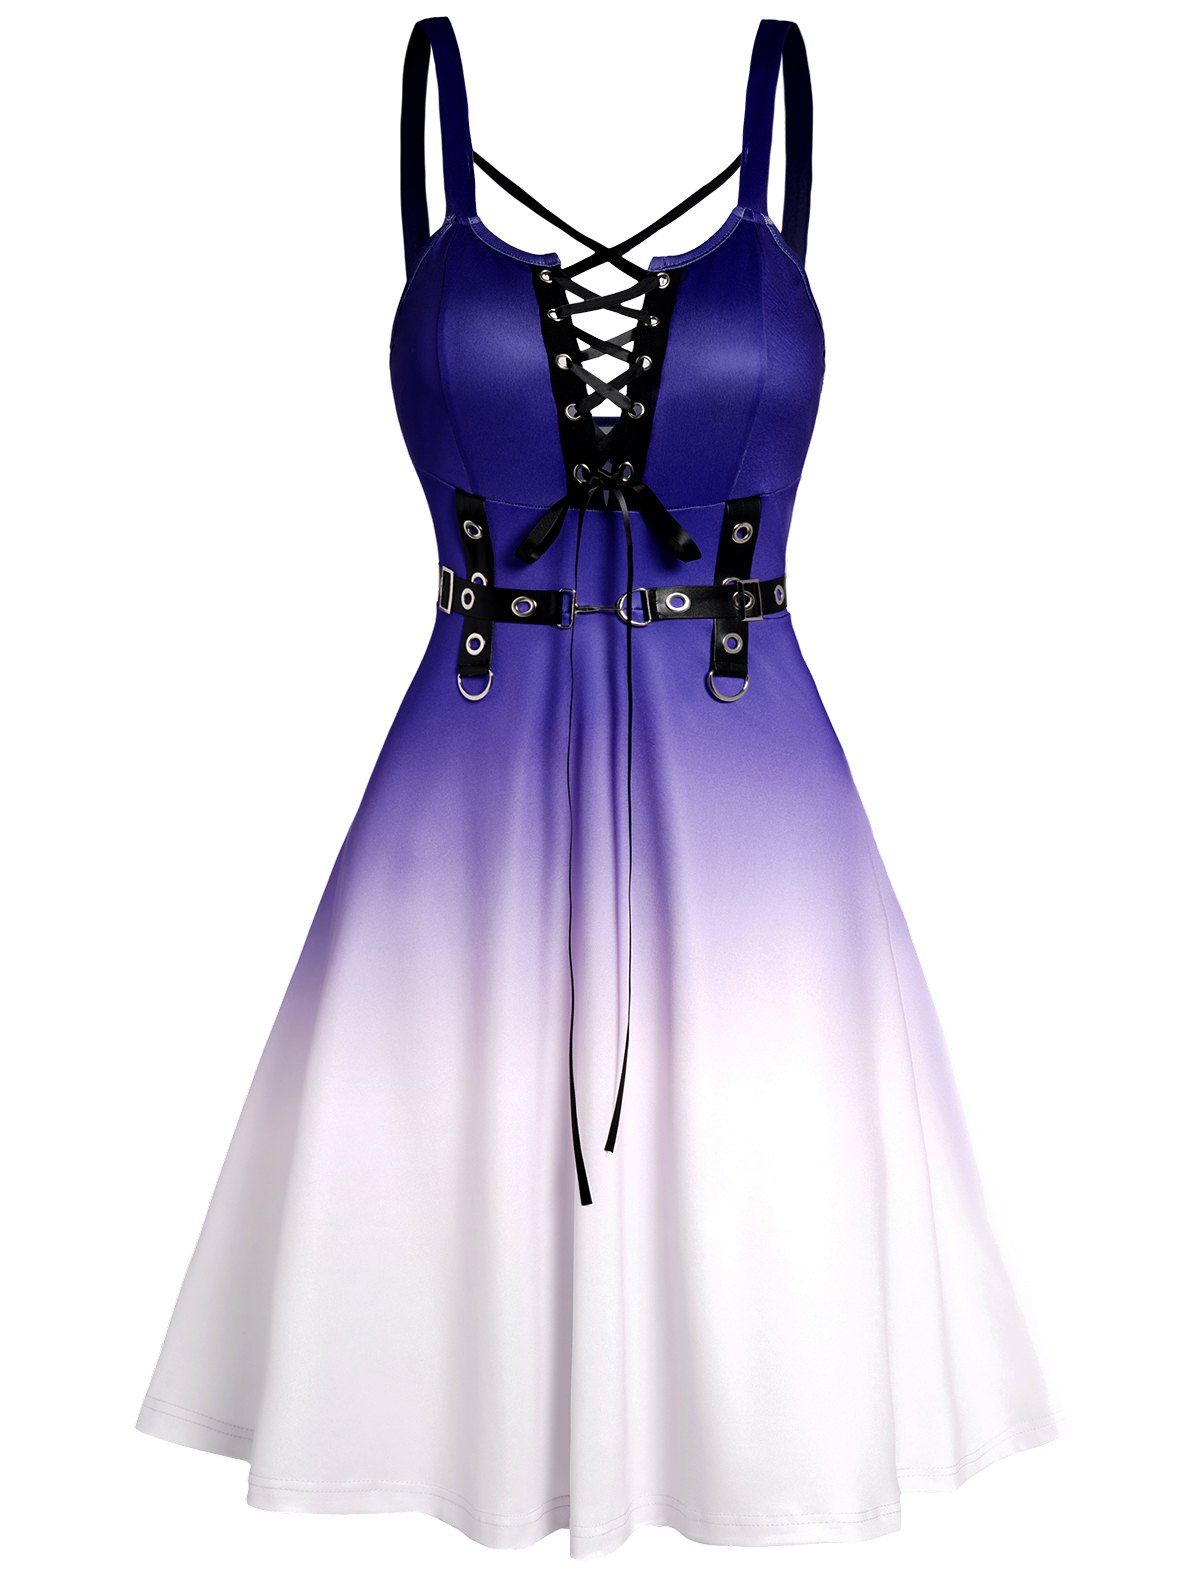 Ombre Dress Lace Up Crisscross Grommet Sleeveless High Waisted A Line Mini Dress - PURPLE XXL